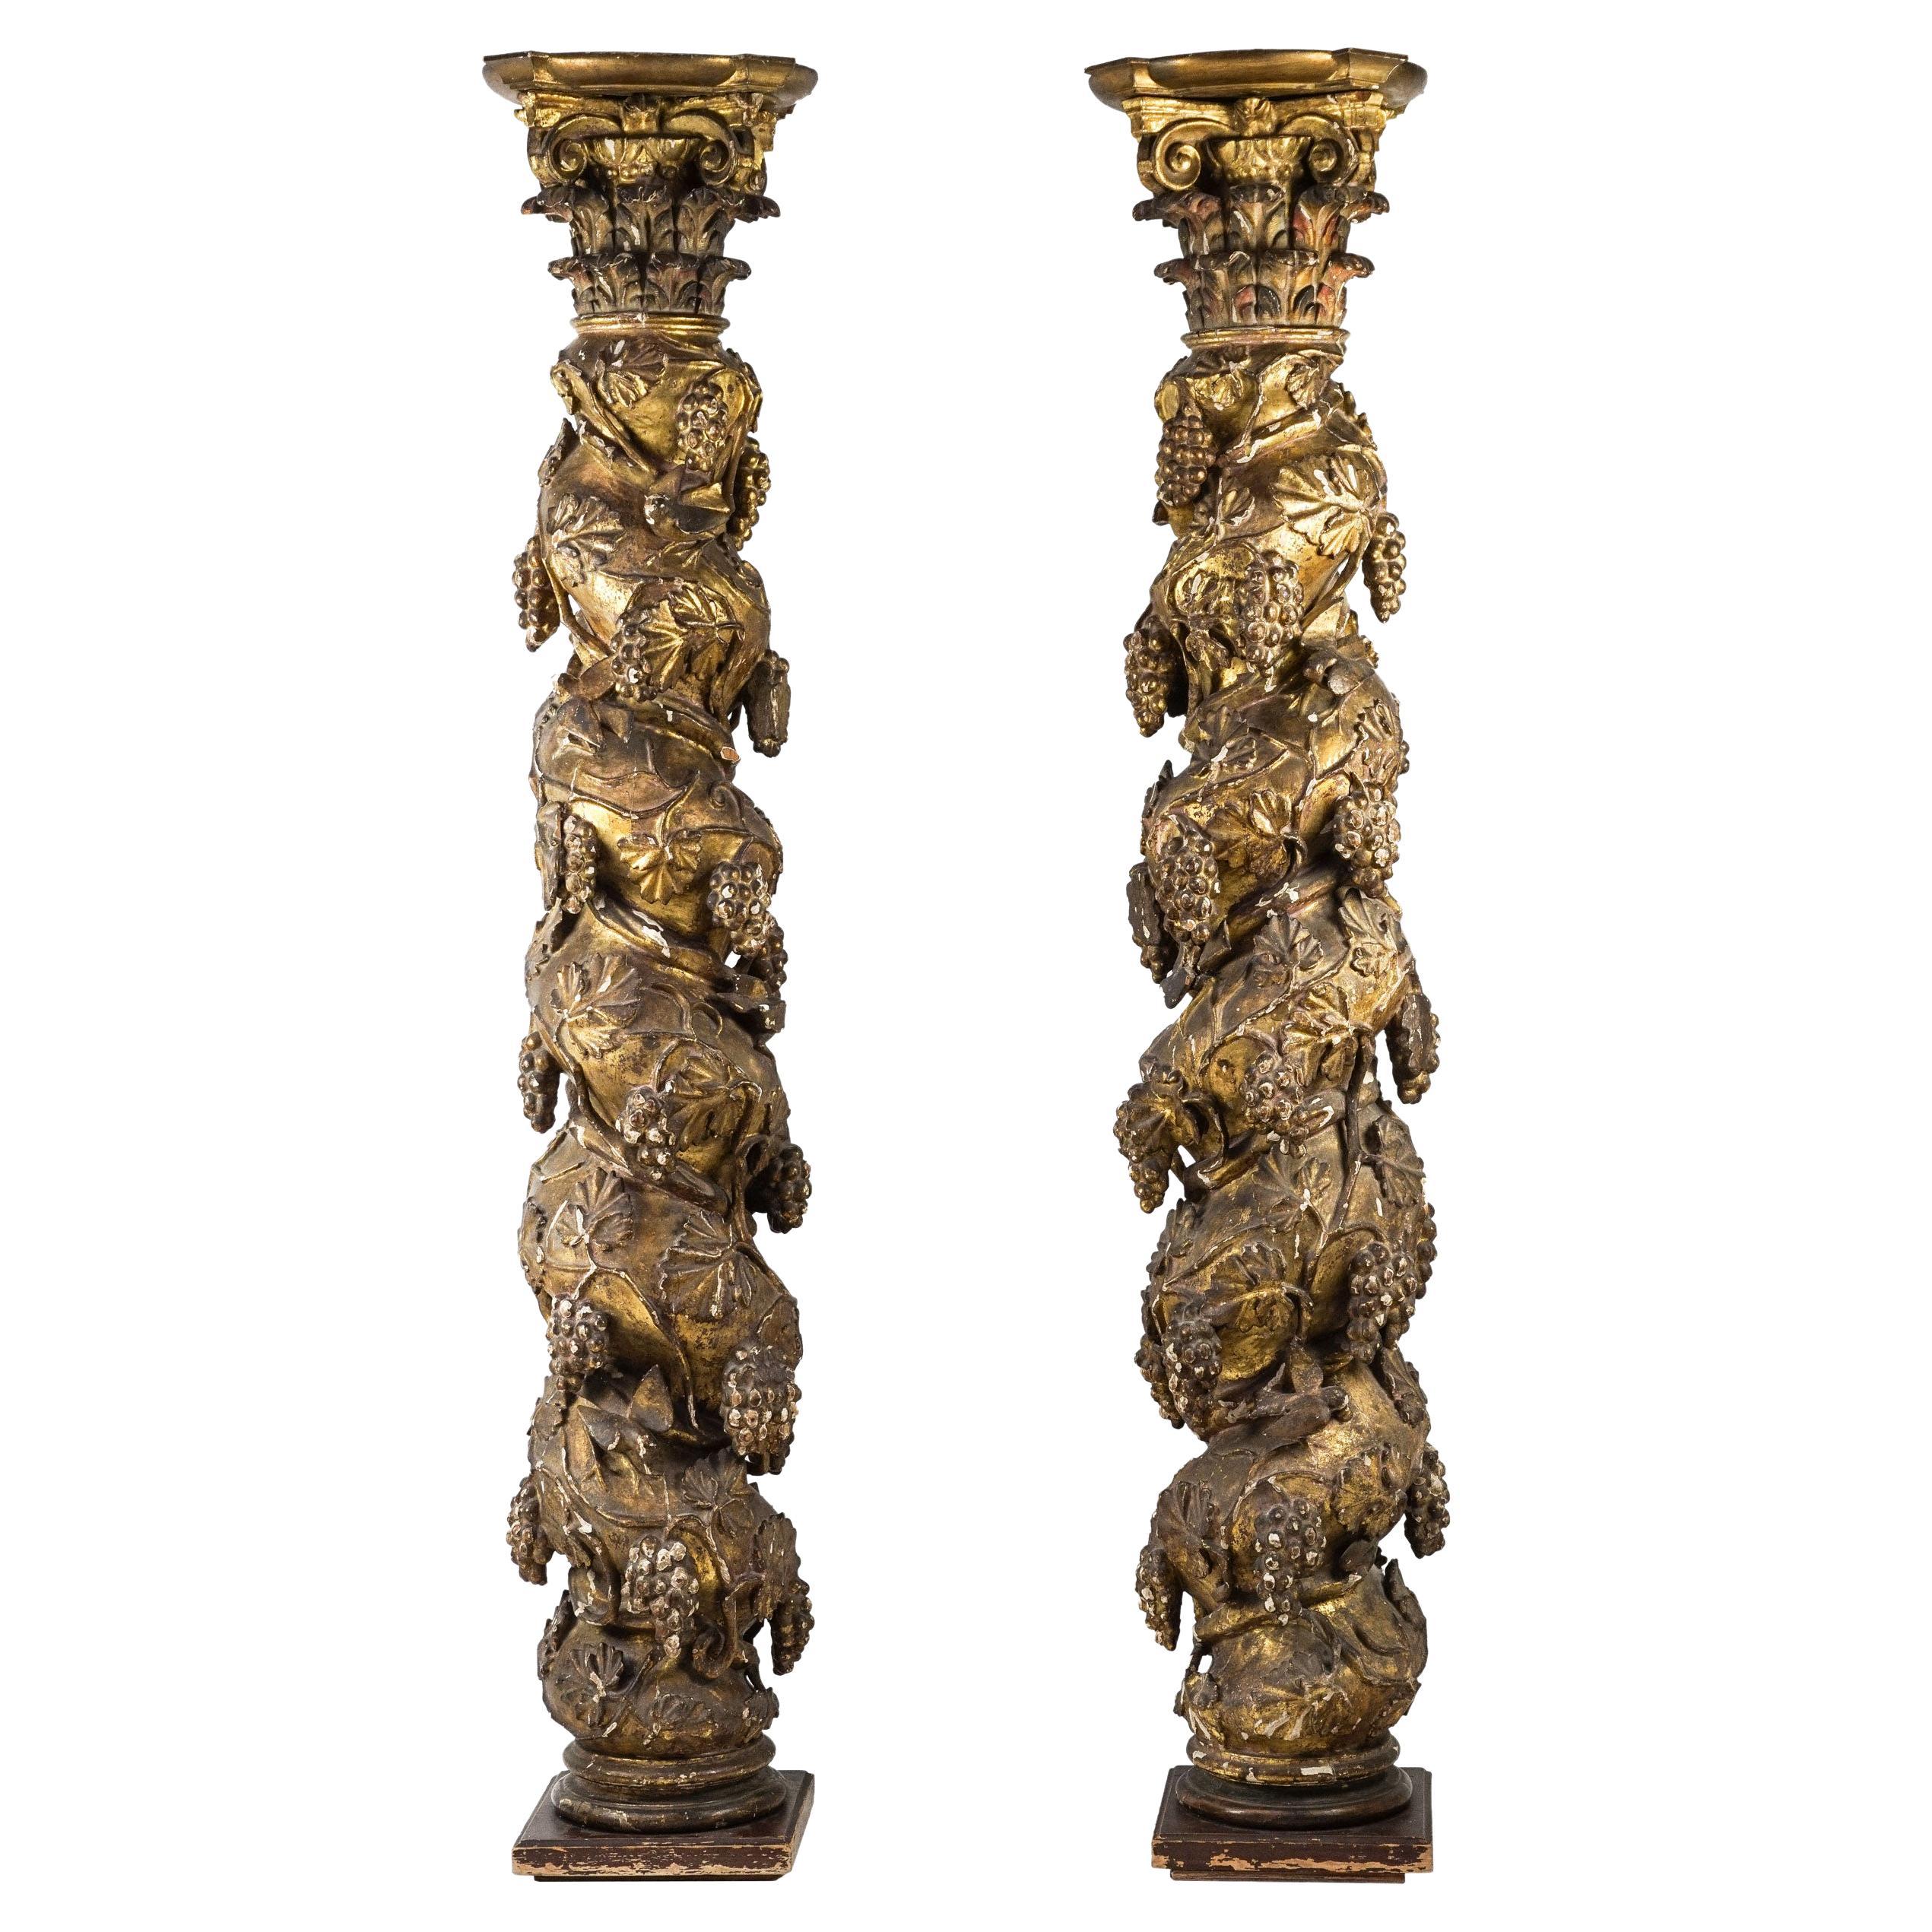 Zwei vergoldete Säulen aus dem italienischen Barock des 18. Jahrhunderts mit korinthischen Kapitellen